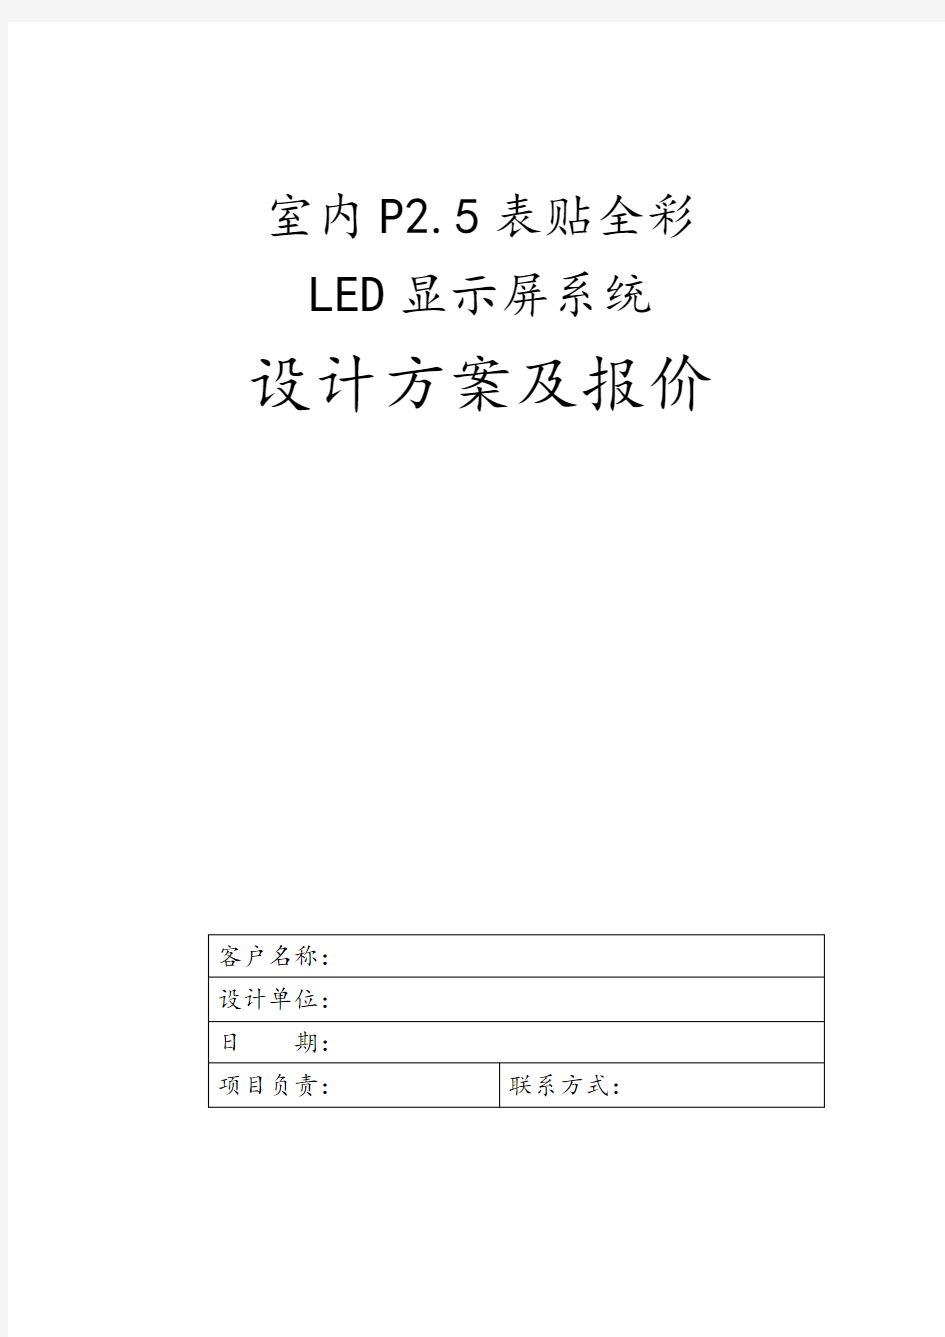 室内P2.5 LED显示屏报价